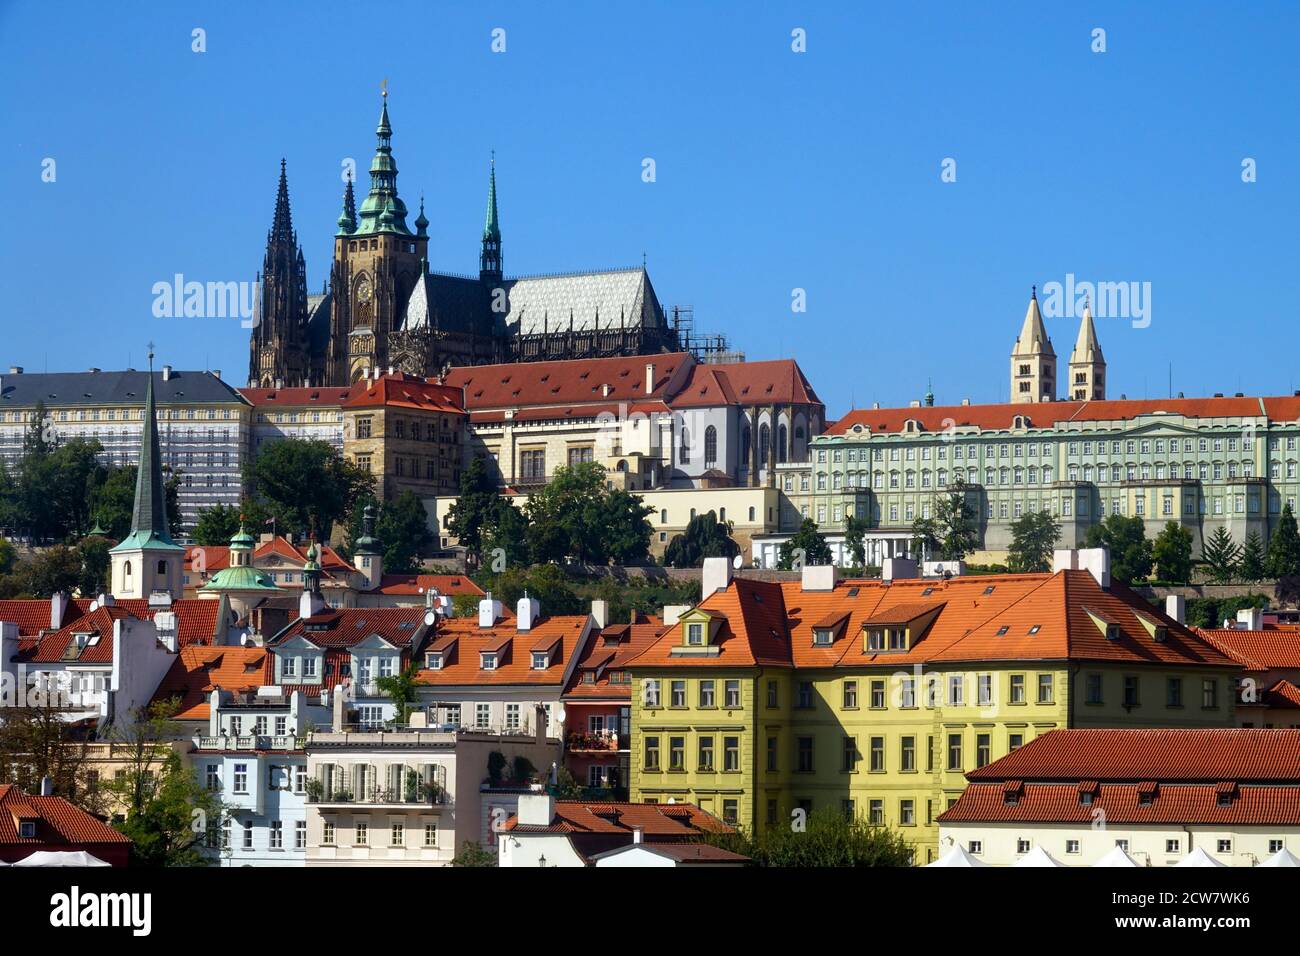 République tchèque vue sur le château de Prague avec une cathédrale au-dessus de la Mala Strana, siège présidentiel sur le quartier de Hradcany symbole de la nation tchèque Banque D'Images